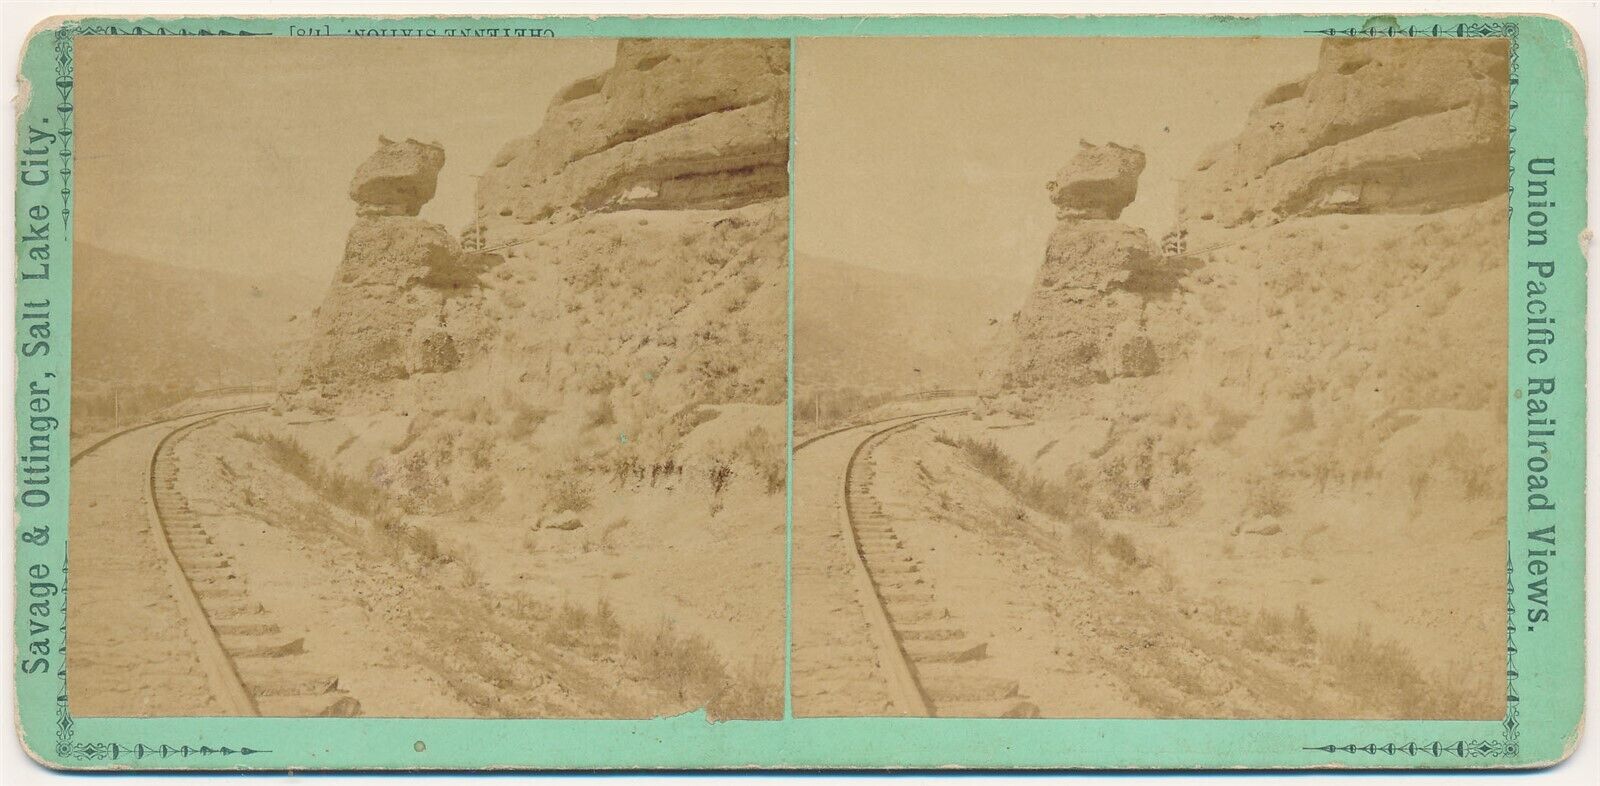 UTAH SV - UPRR - Pulpit Rock - Savage & Ottinger 1870s